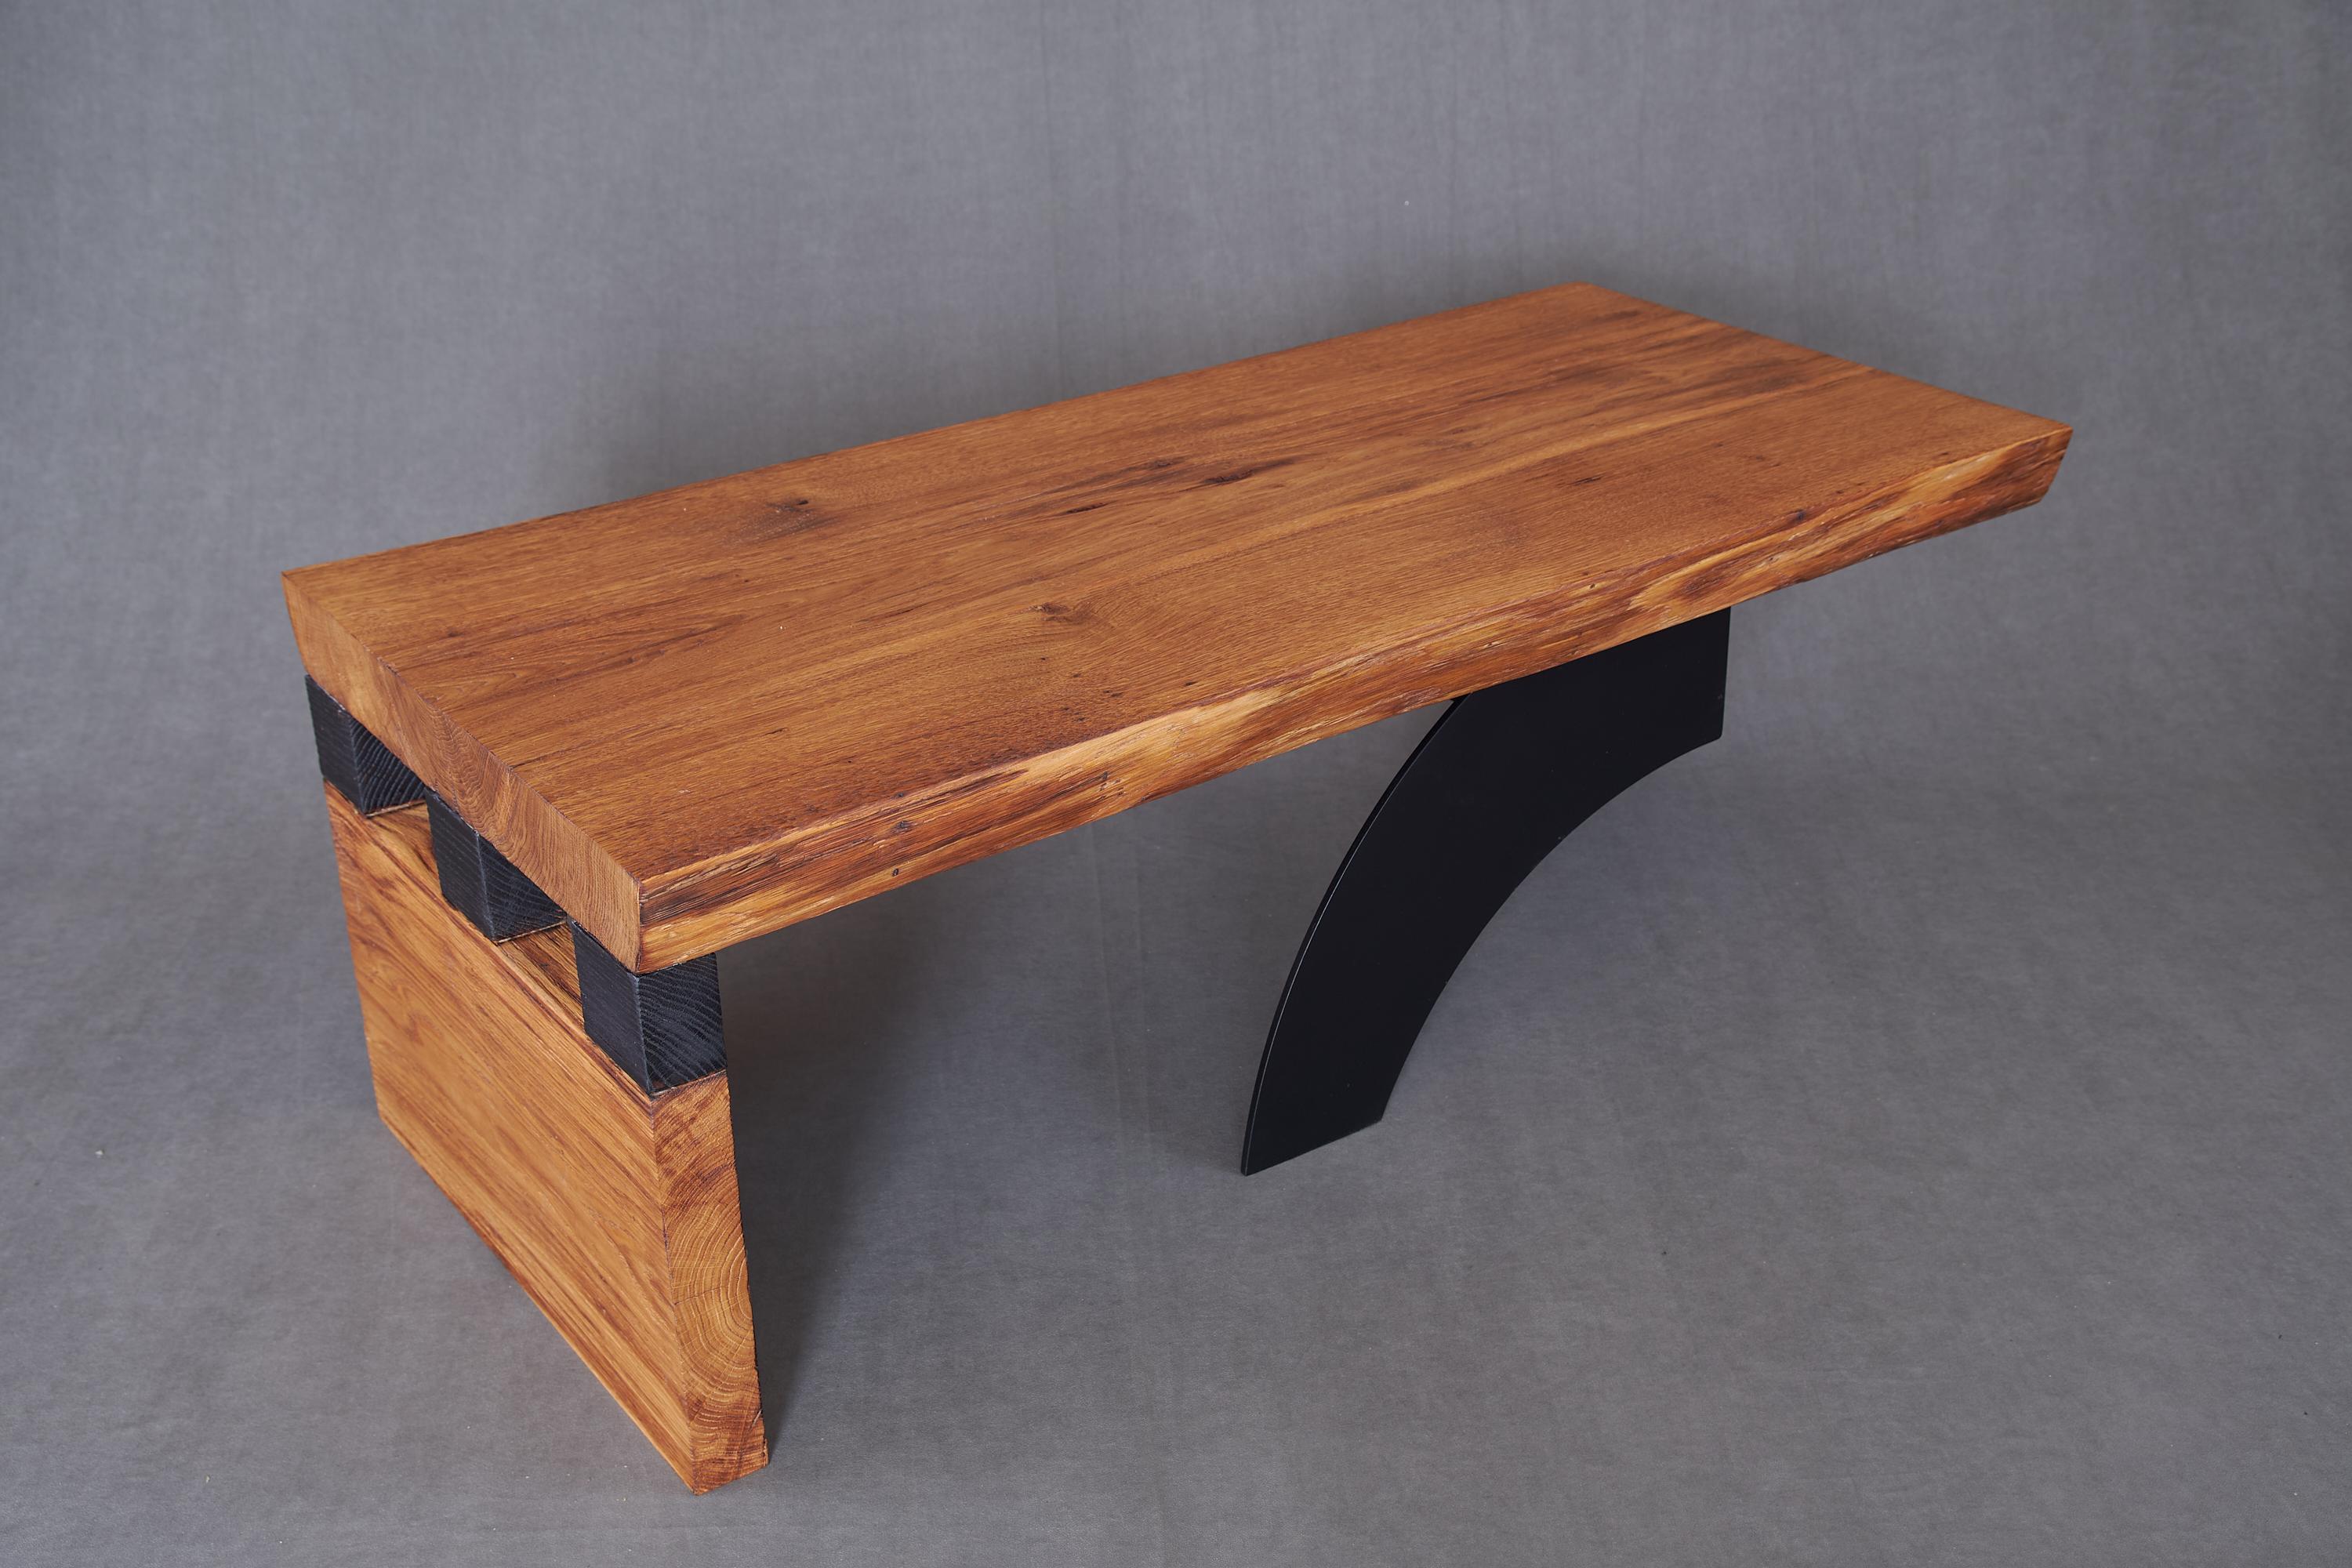 Massive oak Coffee Table, Contemporary Original Design, Logniture For Sale 5